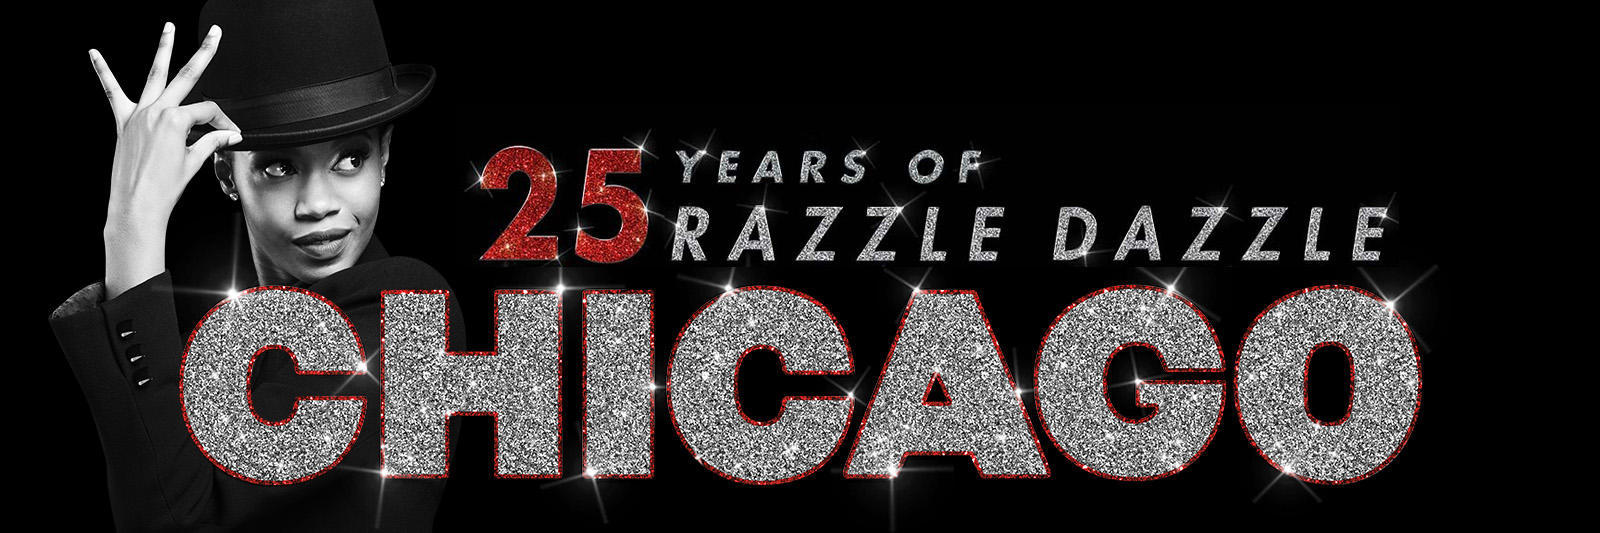 25 years of razzle dazzle Chicago